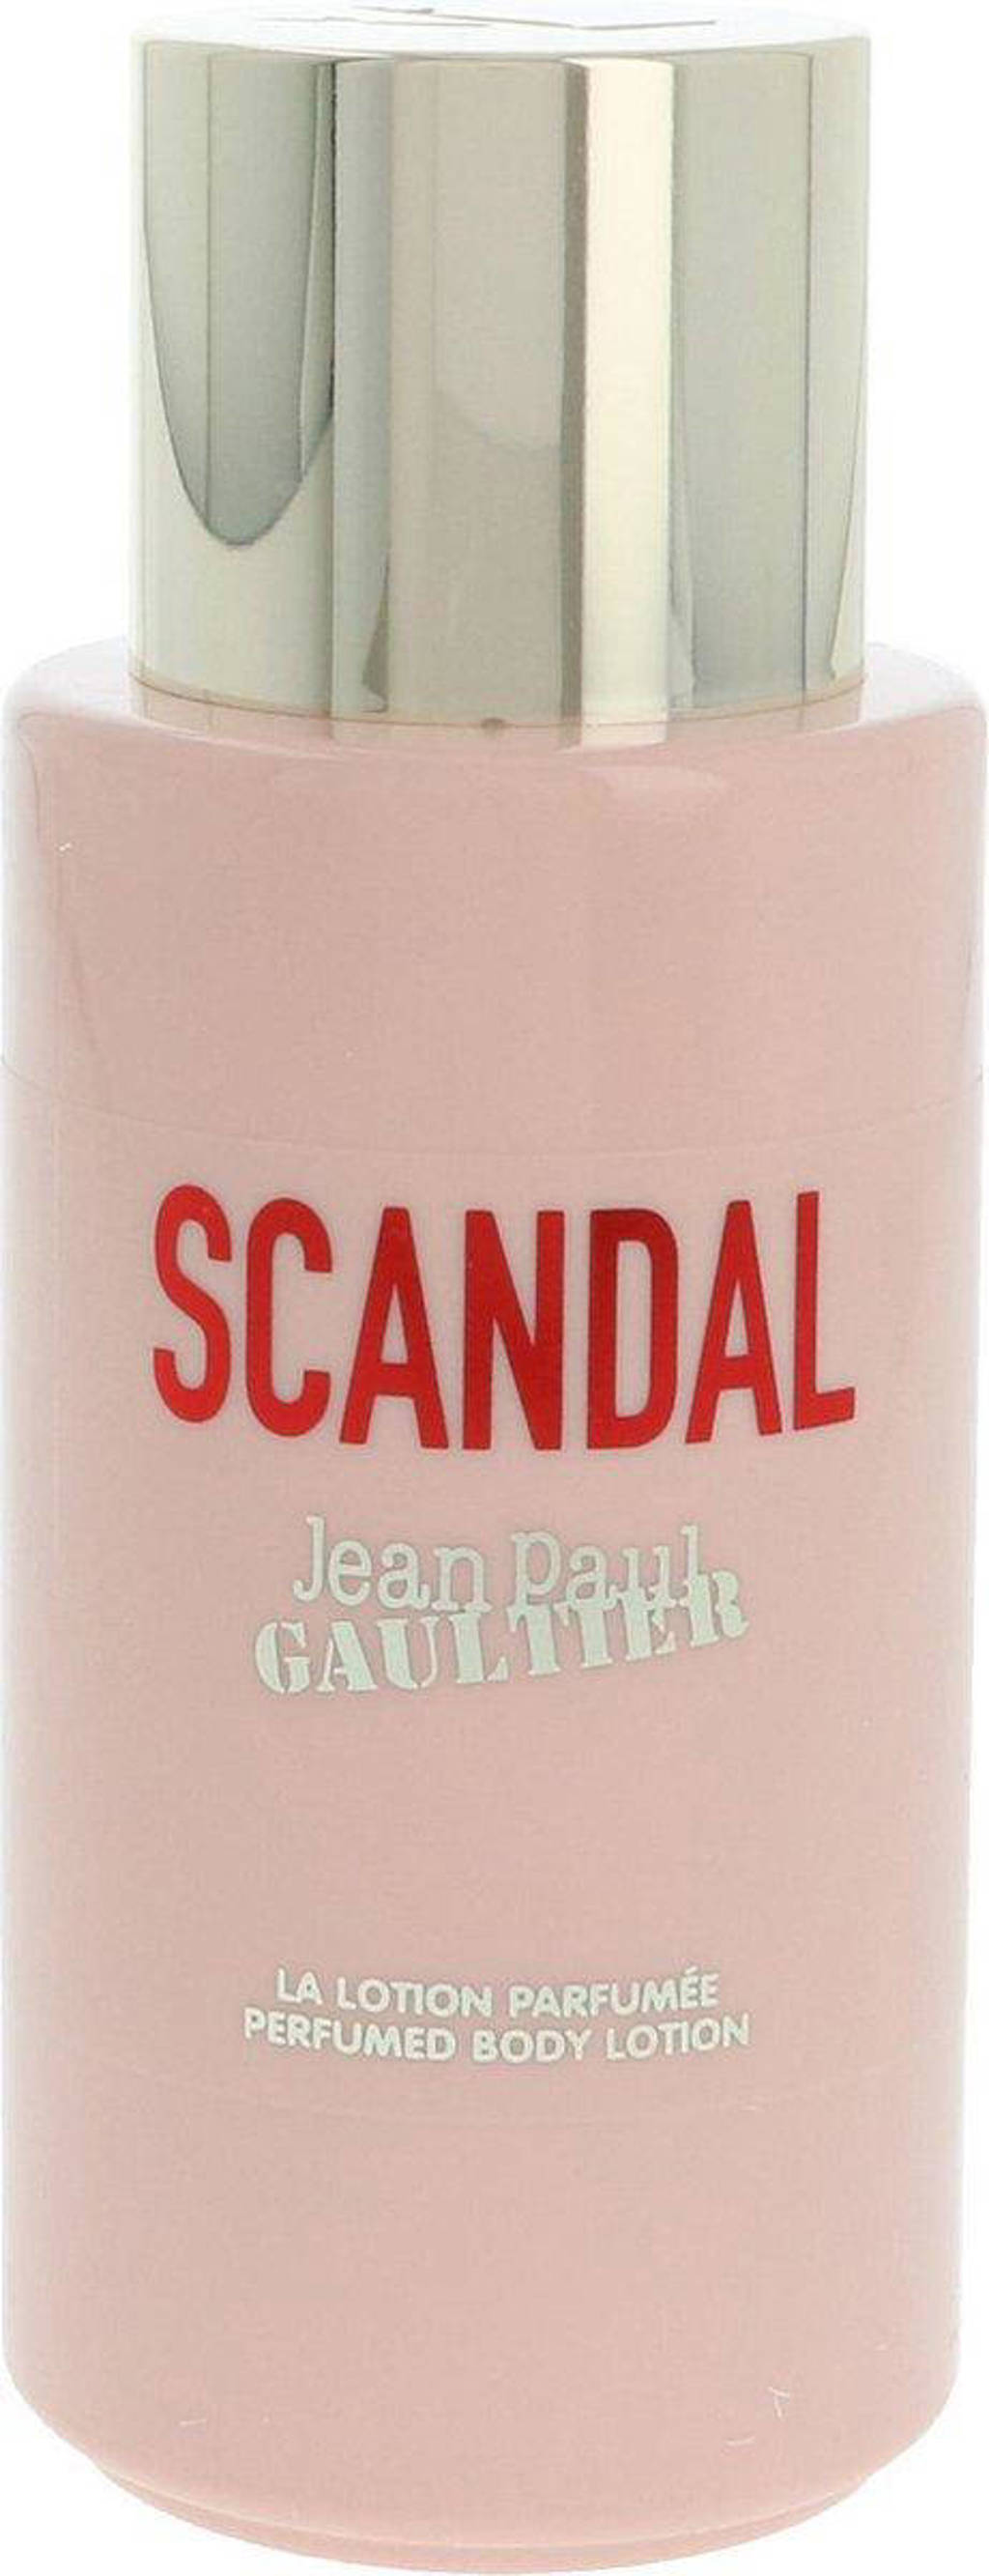 Jean Paul Gaultier Scandal bodylotion - 200 ml